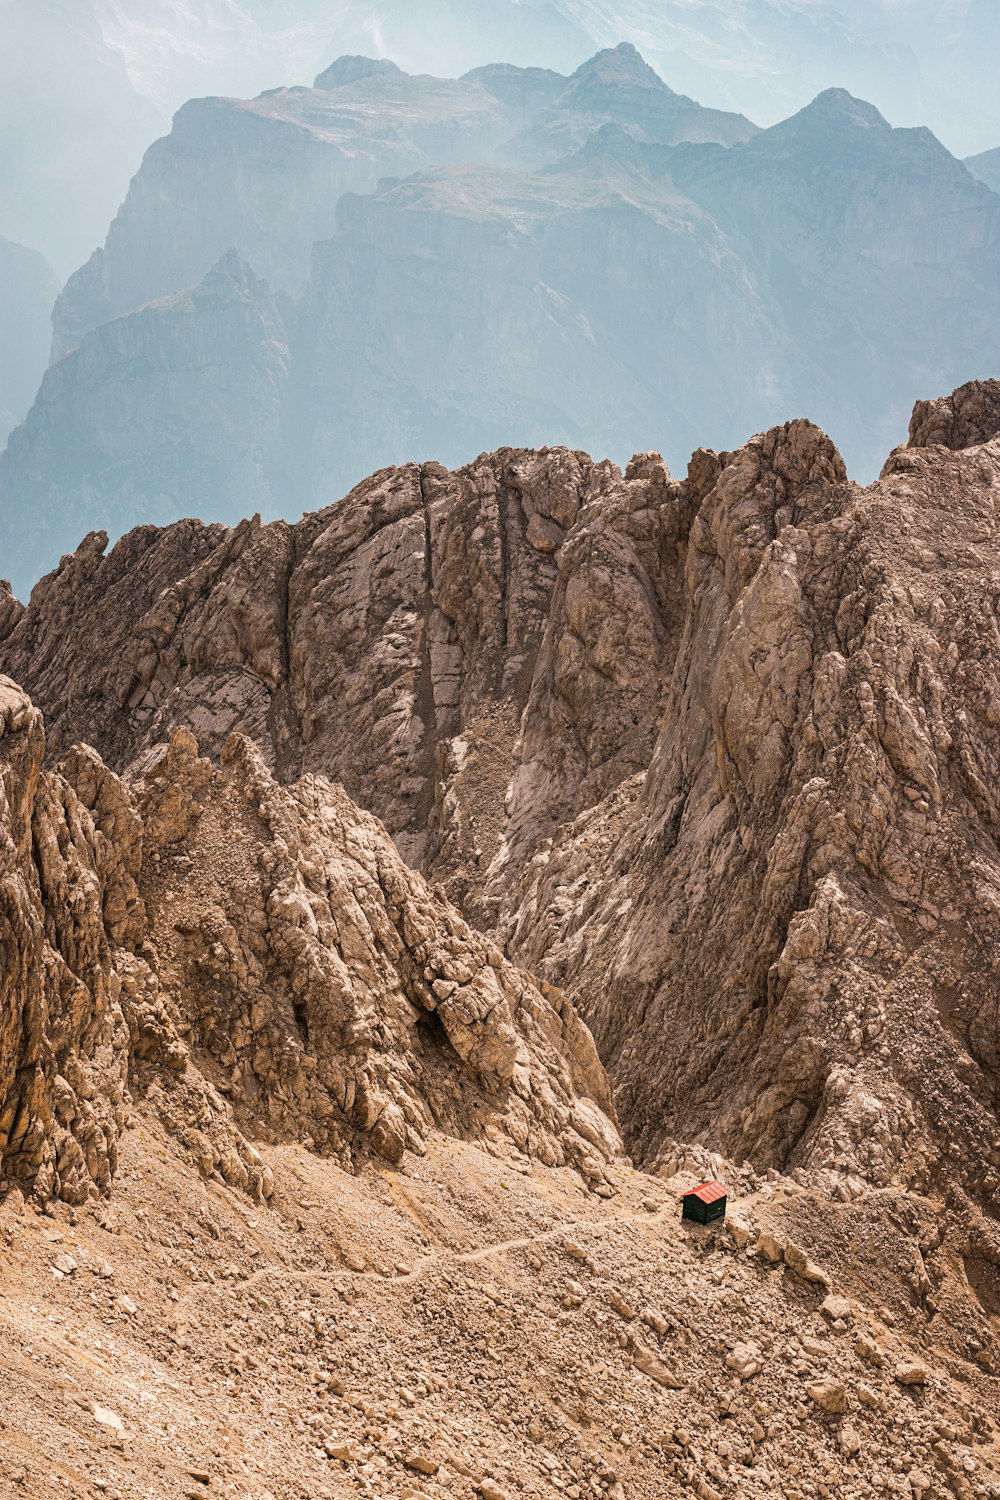 uma pessoa escalando uma montanha